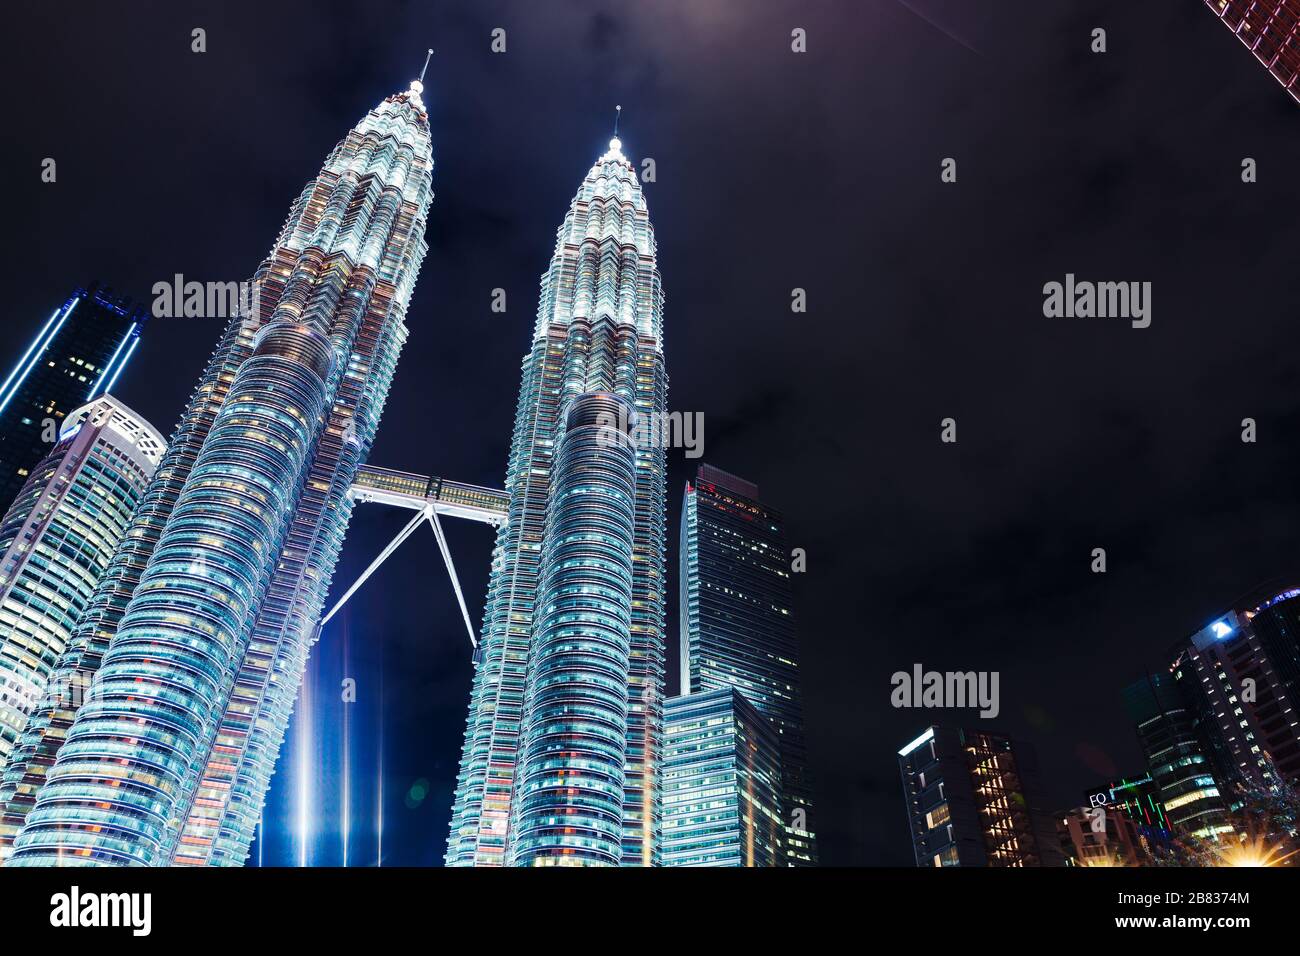 Kuala Lumpur, Malaysia - November 28, 2019: Petronas Twin Towers at night, skyline of KLCC park Stock Photo